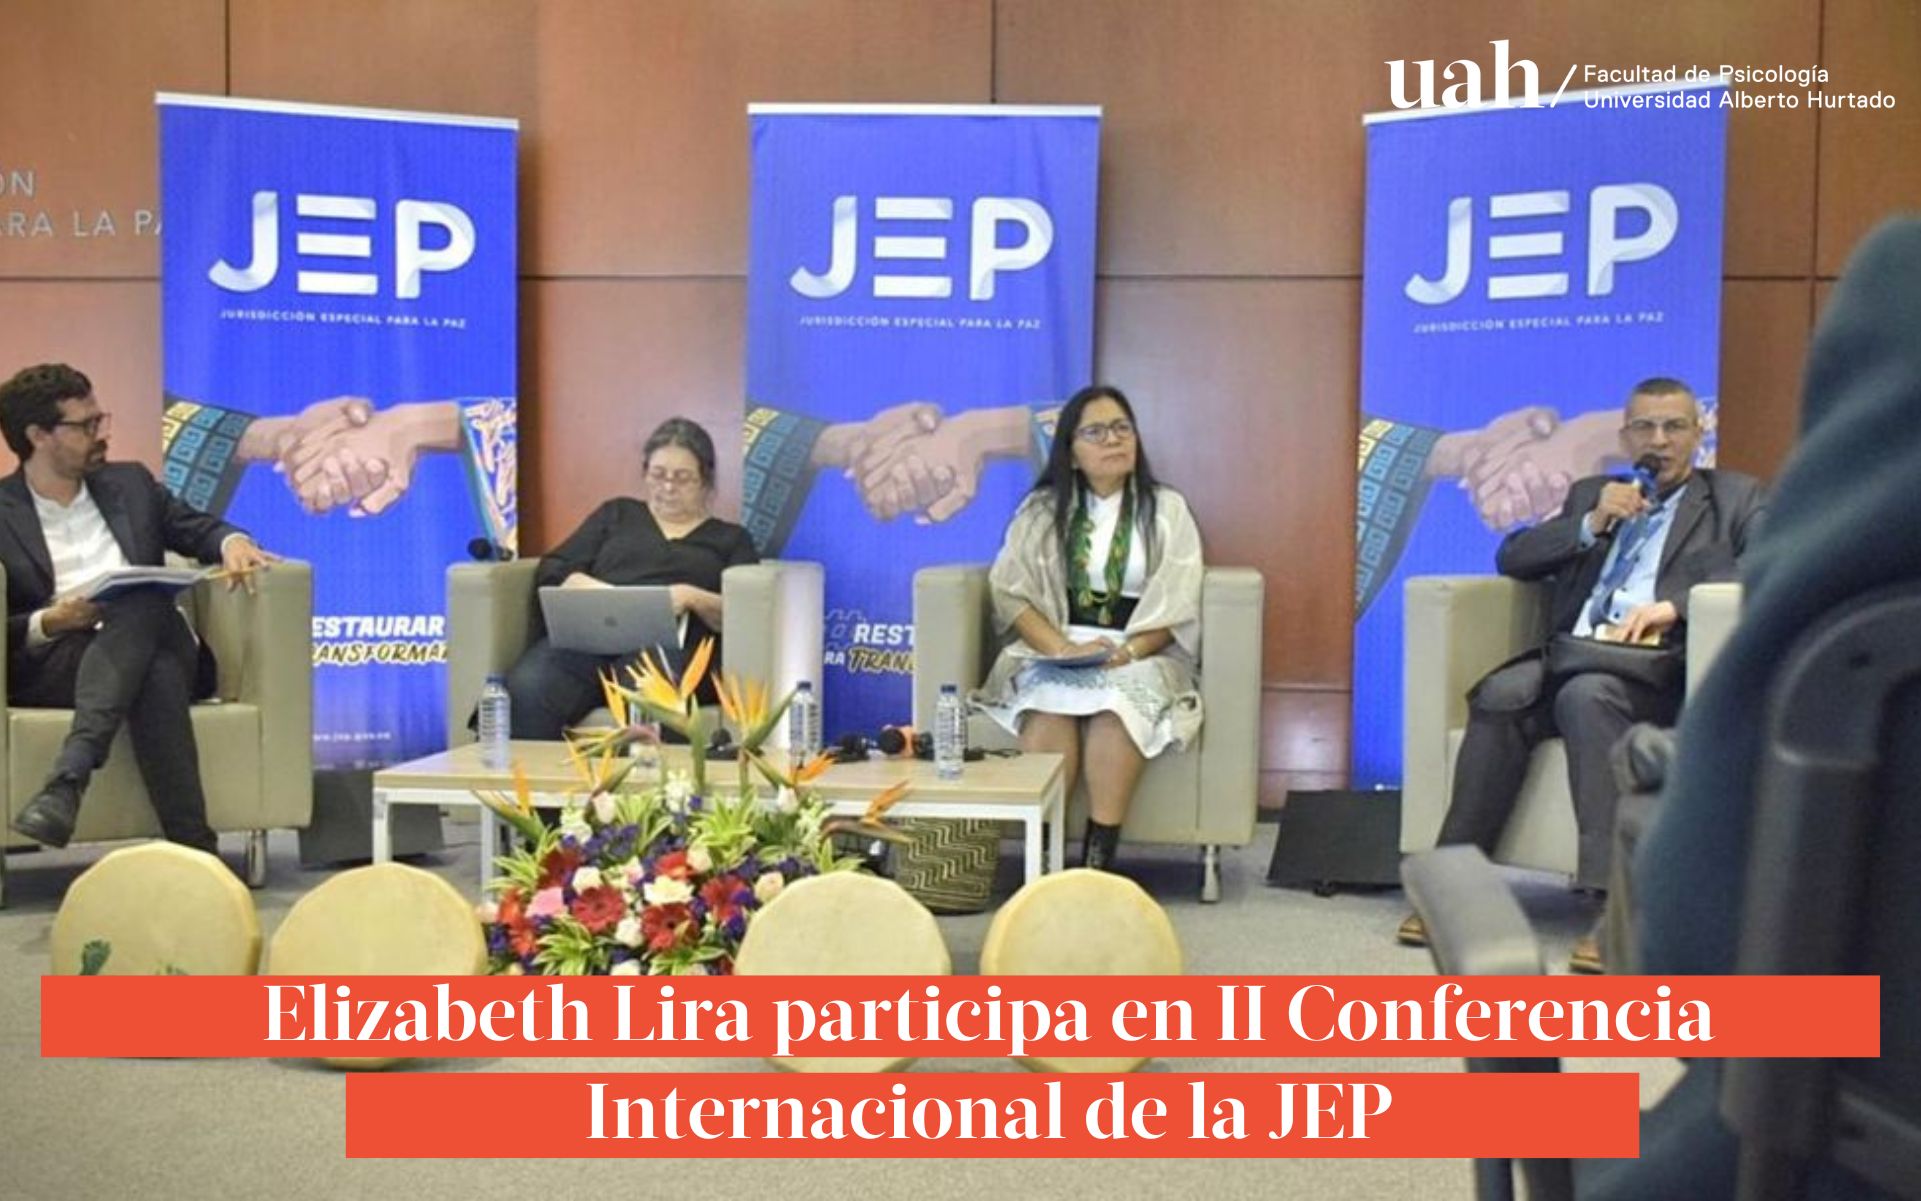 Elizabeth Lira participa en II Conferencia Internacional de la JEP